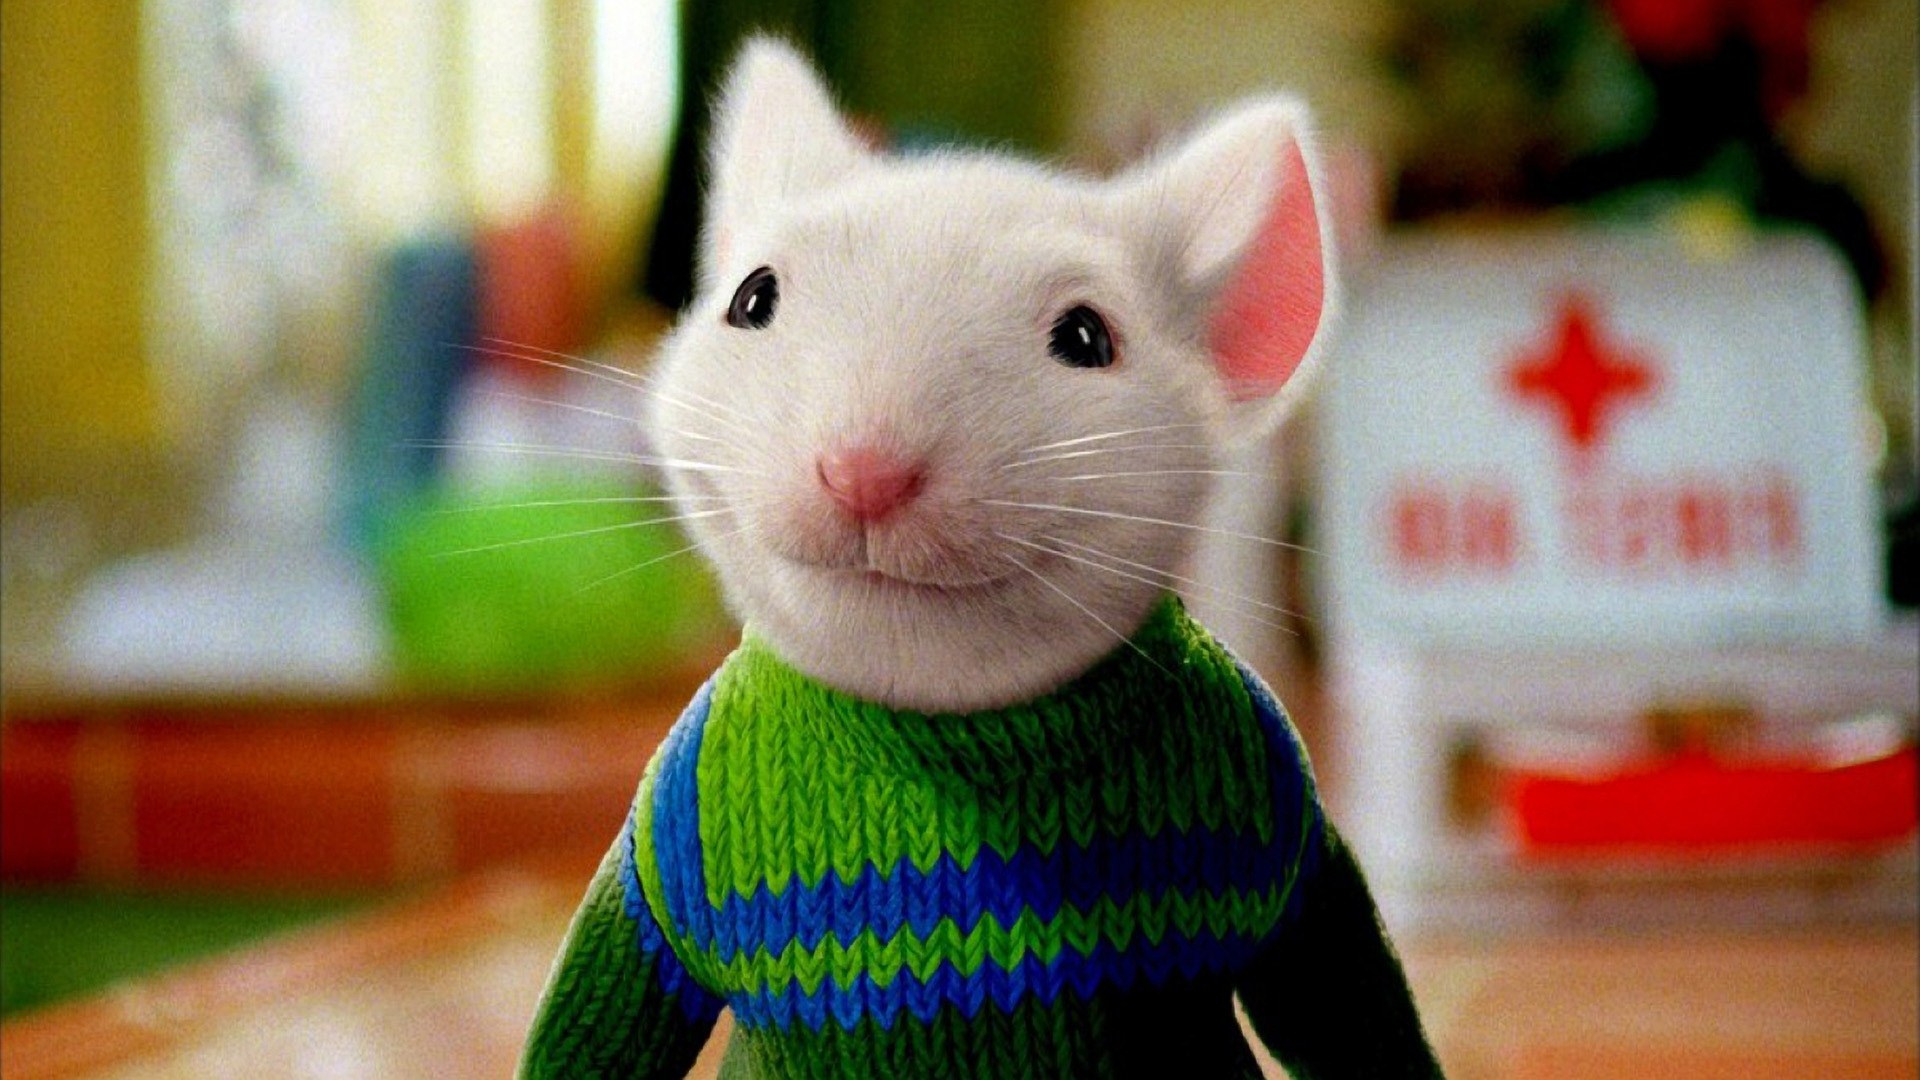 斯图尔特《精灵鼠小弟》斯图尔特是好莱坞真人结合动画电影中,最